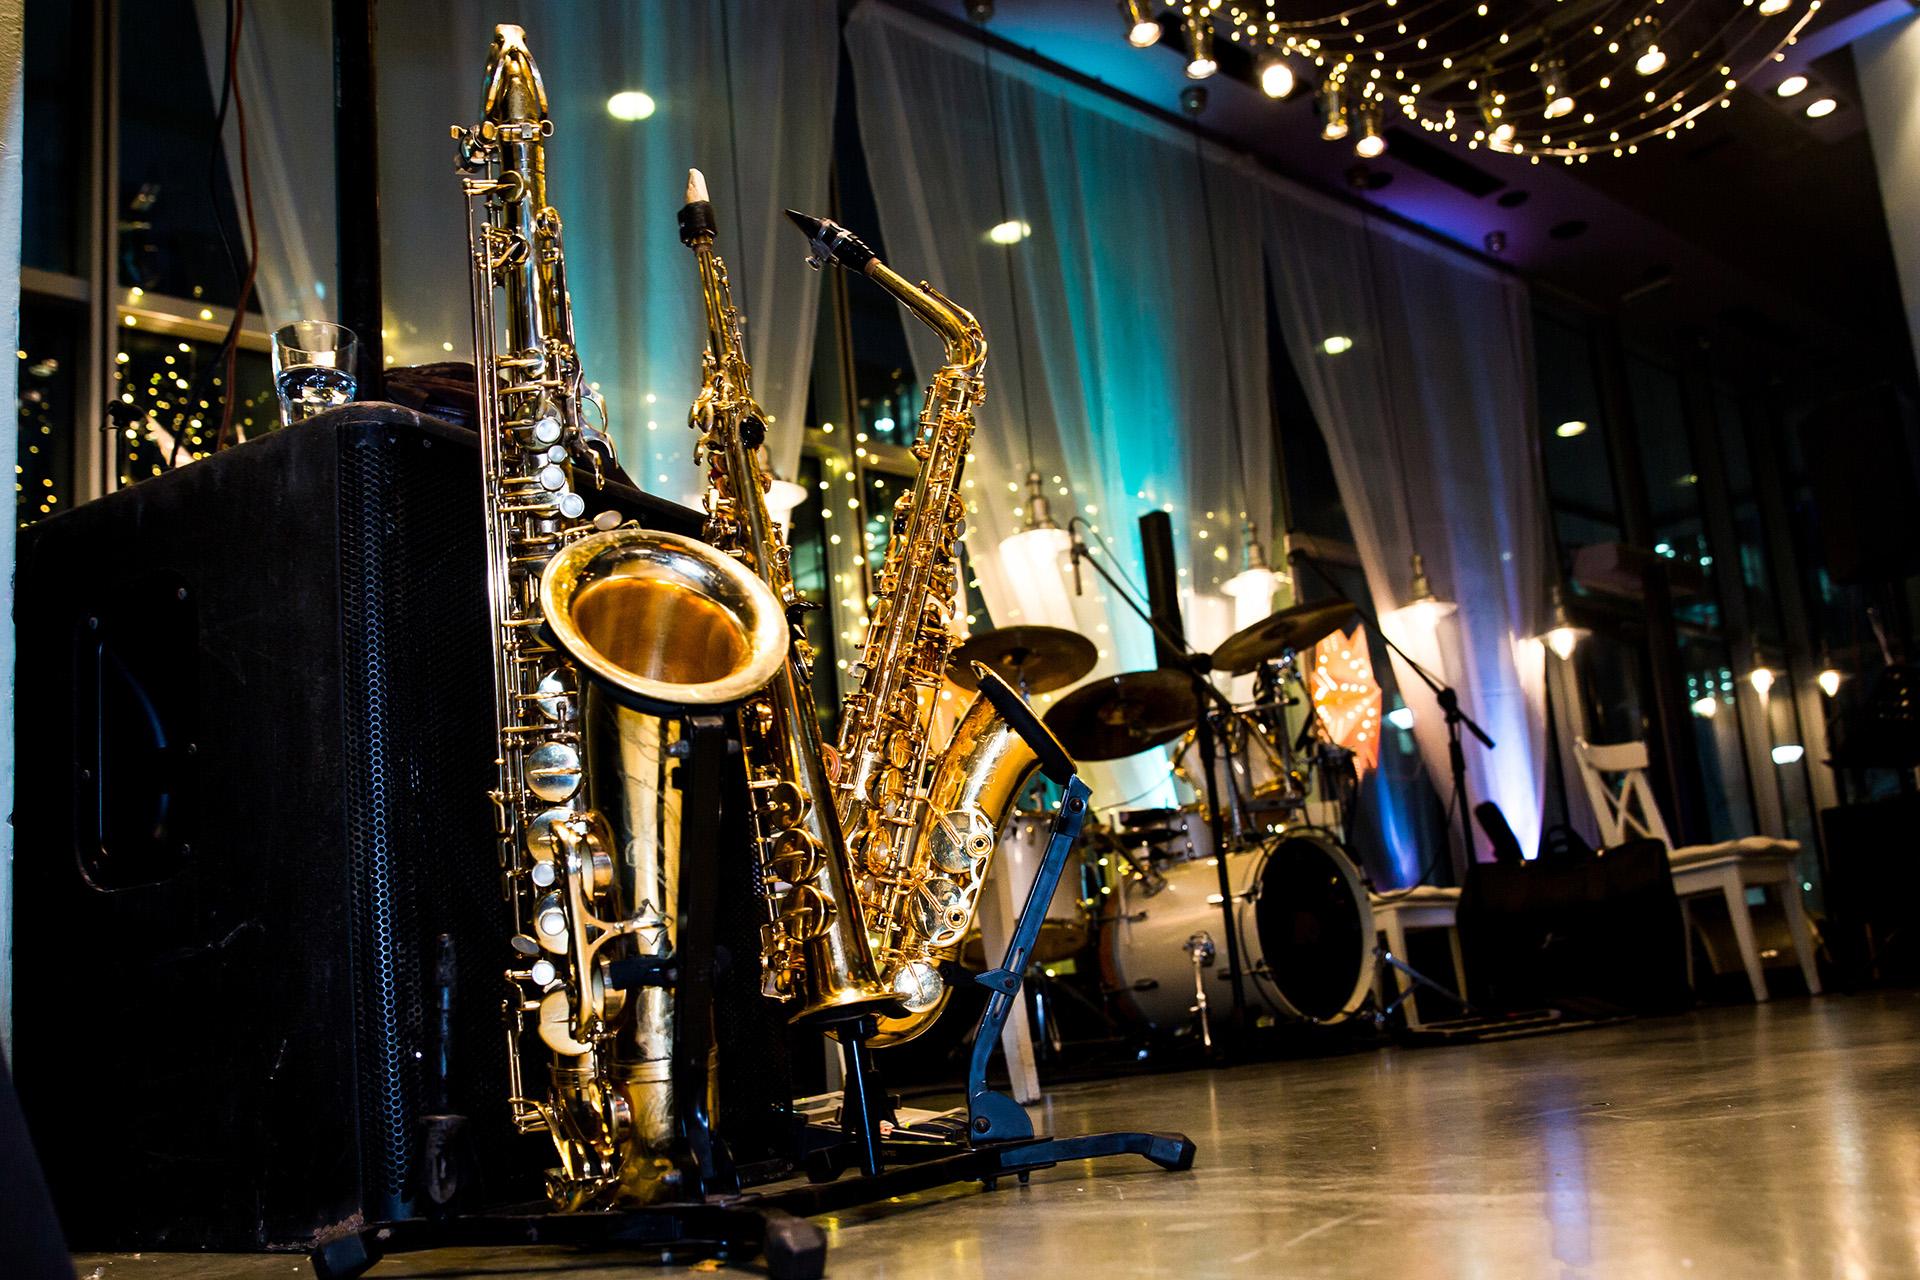 shiny jazz instruments set up on a moodlit stage